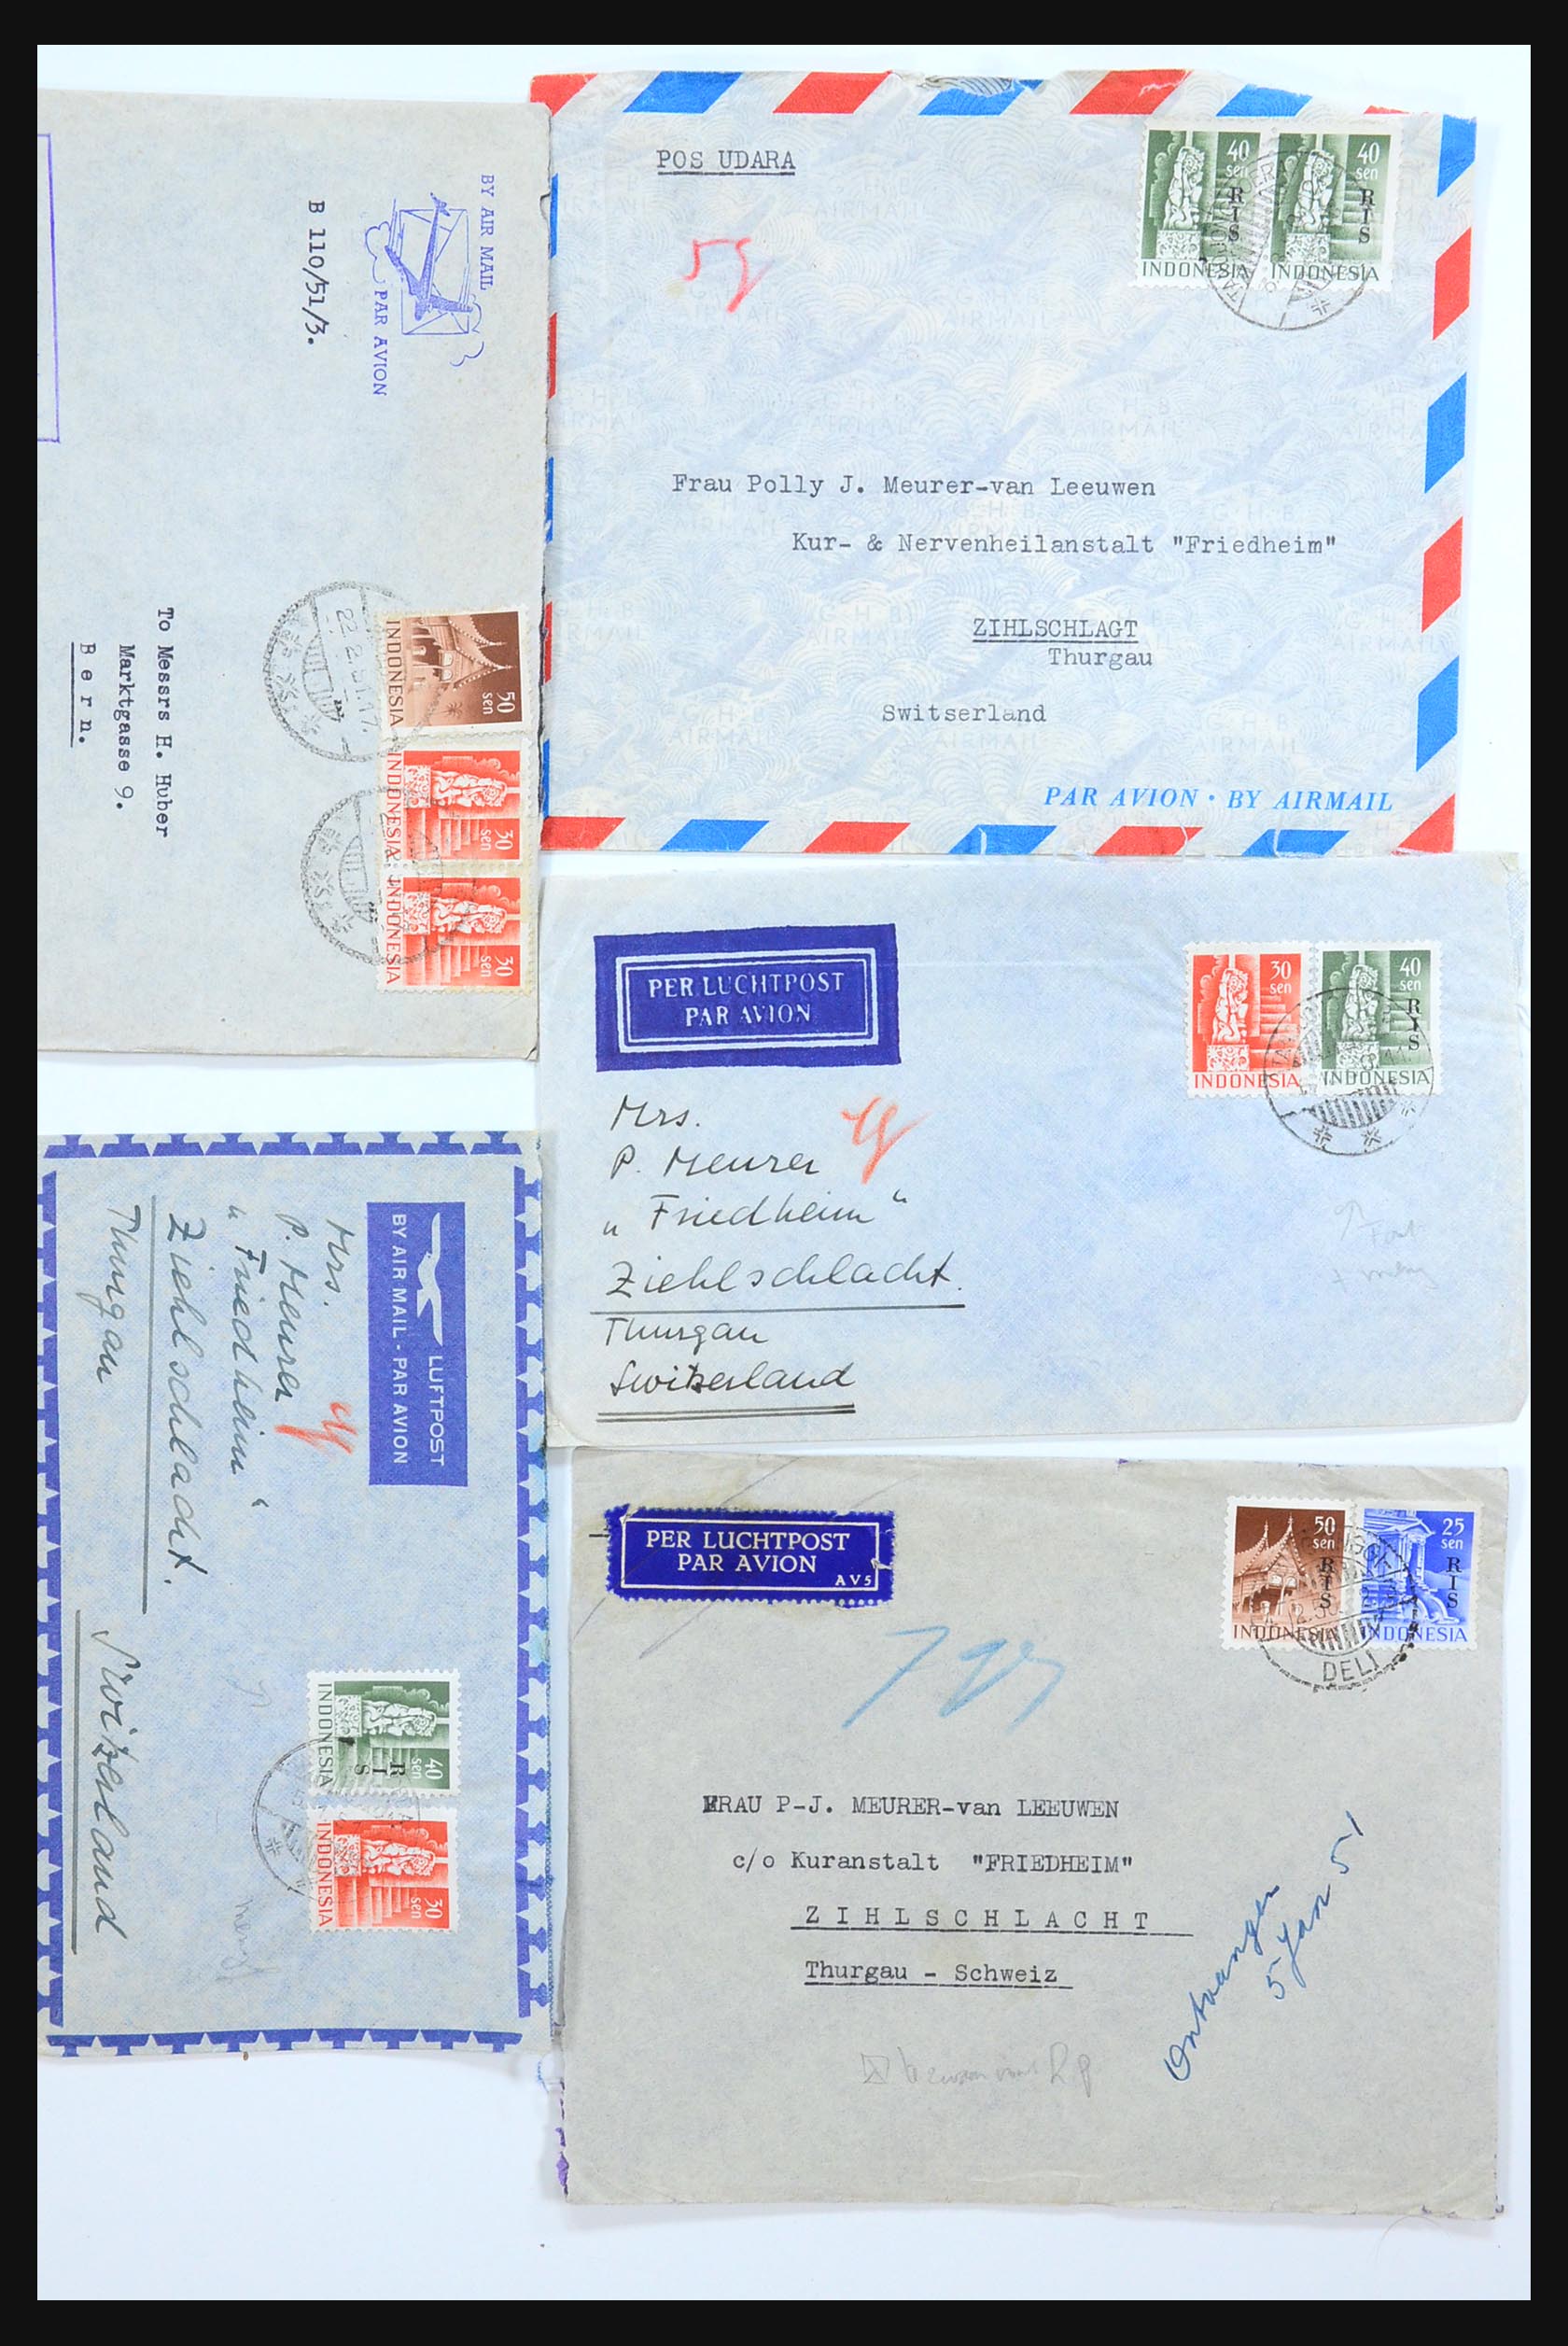 31361 032 - 31361 Nederlands Indië brieven 1880-1950.